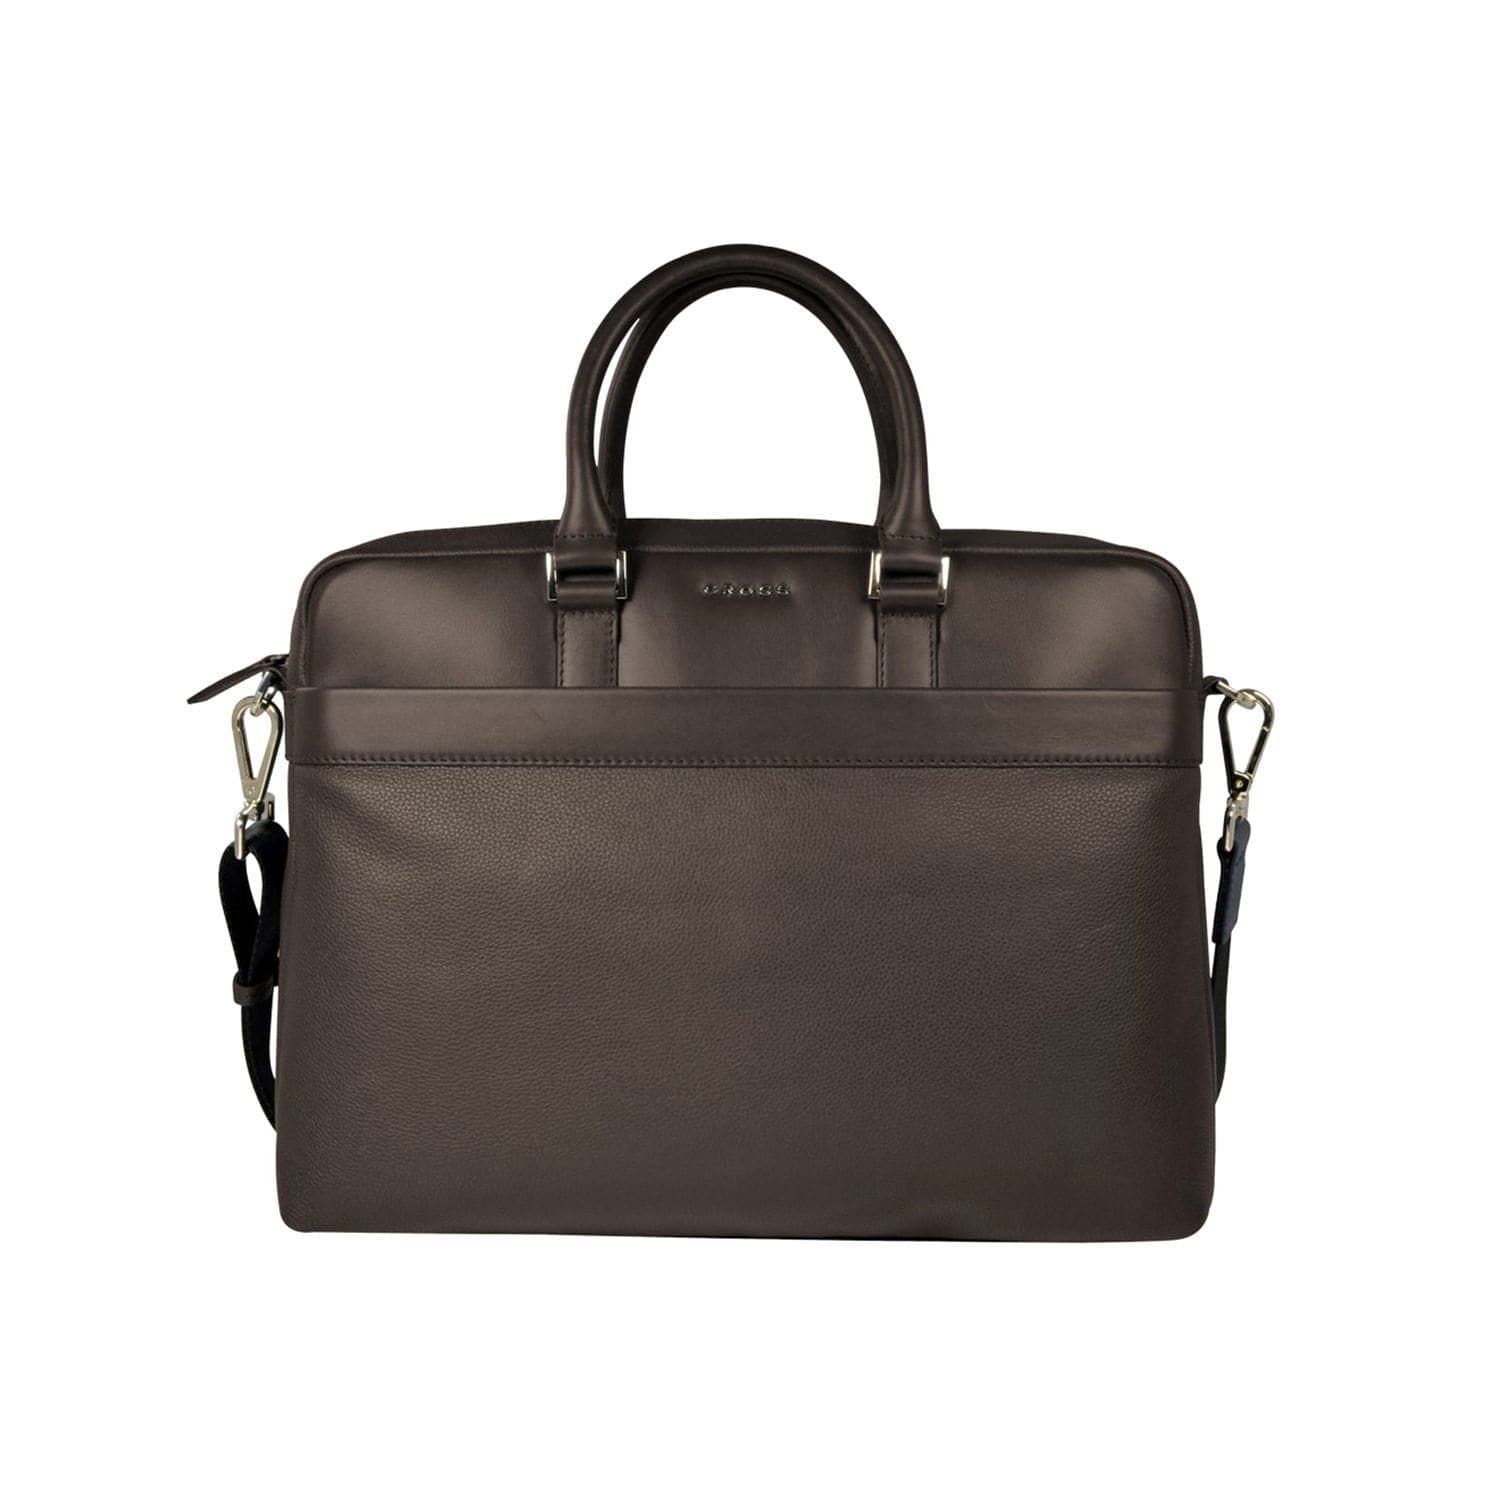 Cross Renovar Weekender Leather Briefcase for Men  - Oak Brown - AC941264-1-3 - Jashanmal Home